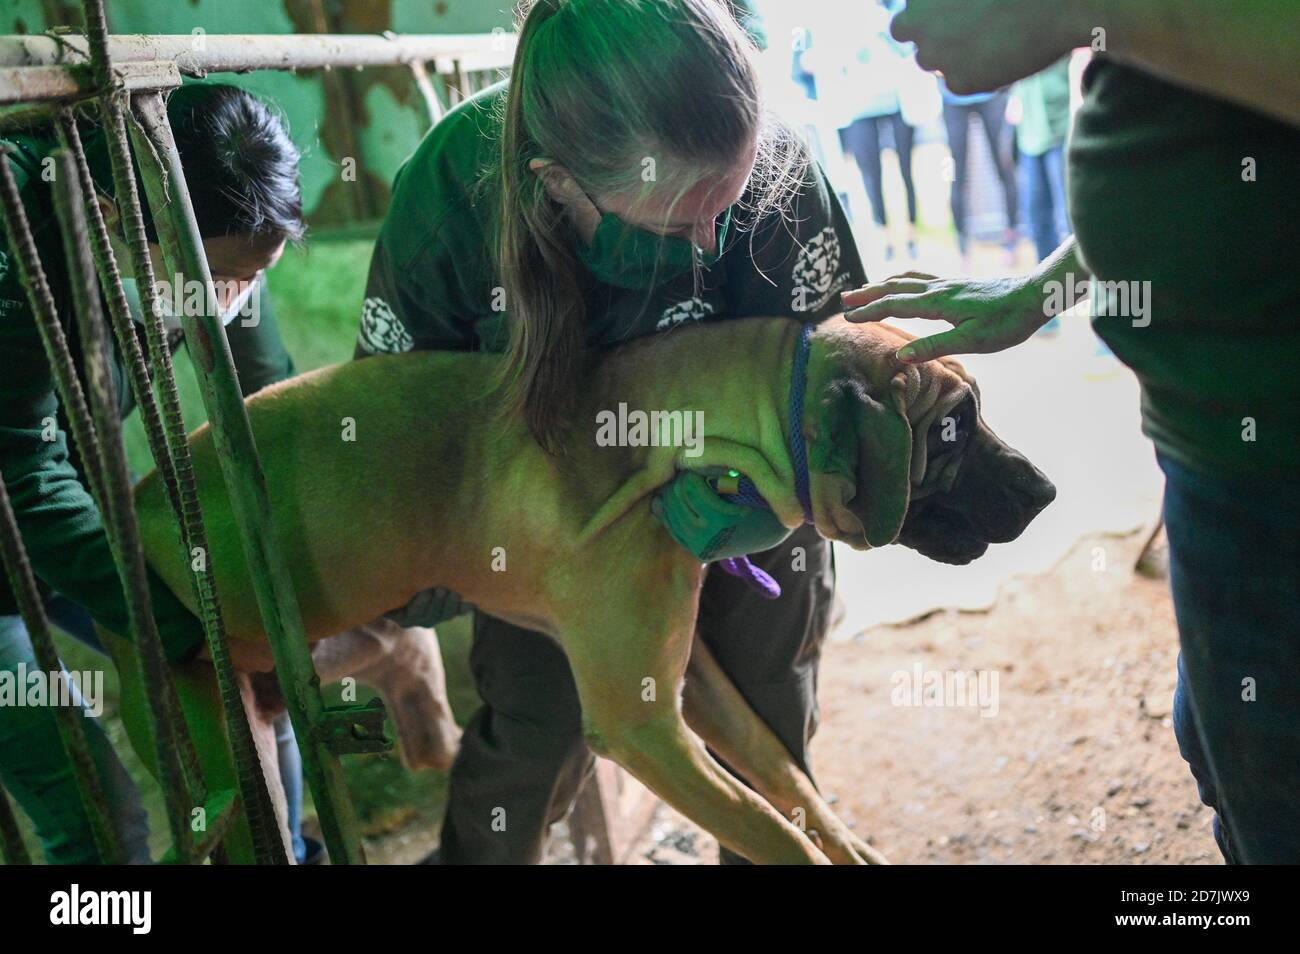 Haemi, Corée du Sud. 22 octobre 2020. Les secouristes déplacent un chien d'une cage vers un porteur dans une ferme de viande de chien à Haemi, en Corée du Sud, le jeudi 22 octobre 2020. Humanl Society International, une ONG de défense des droits des animaux, a sauvé les chiens de la ferme et les amène aux États-Unis et au Canada pour adoption. Photo de Thomas Maresca/UPI crédit: UPI/Alay Live News Banque D'Images